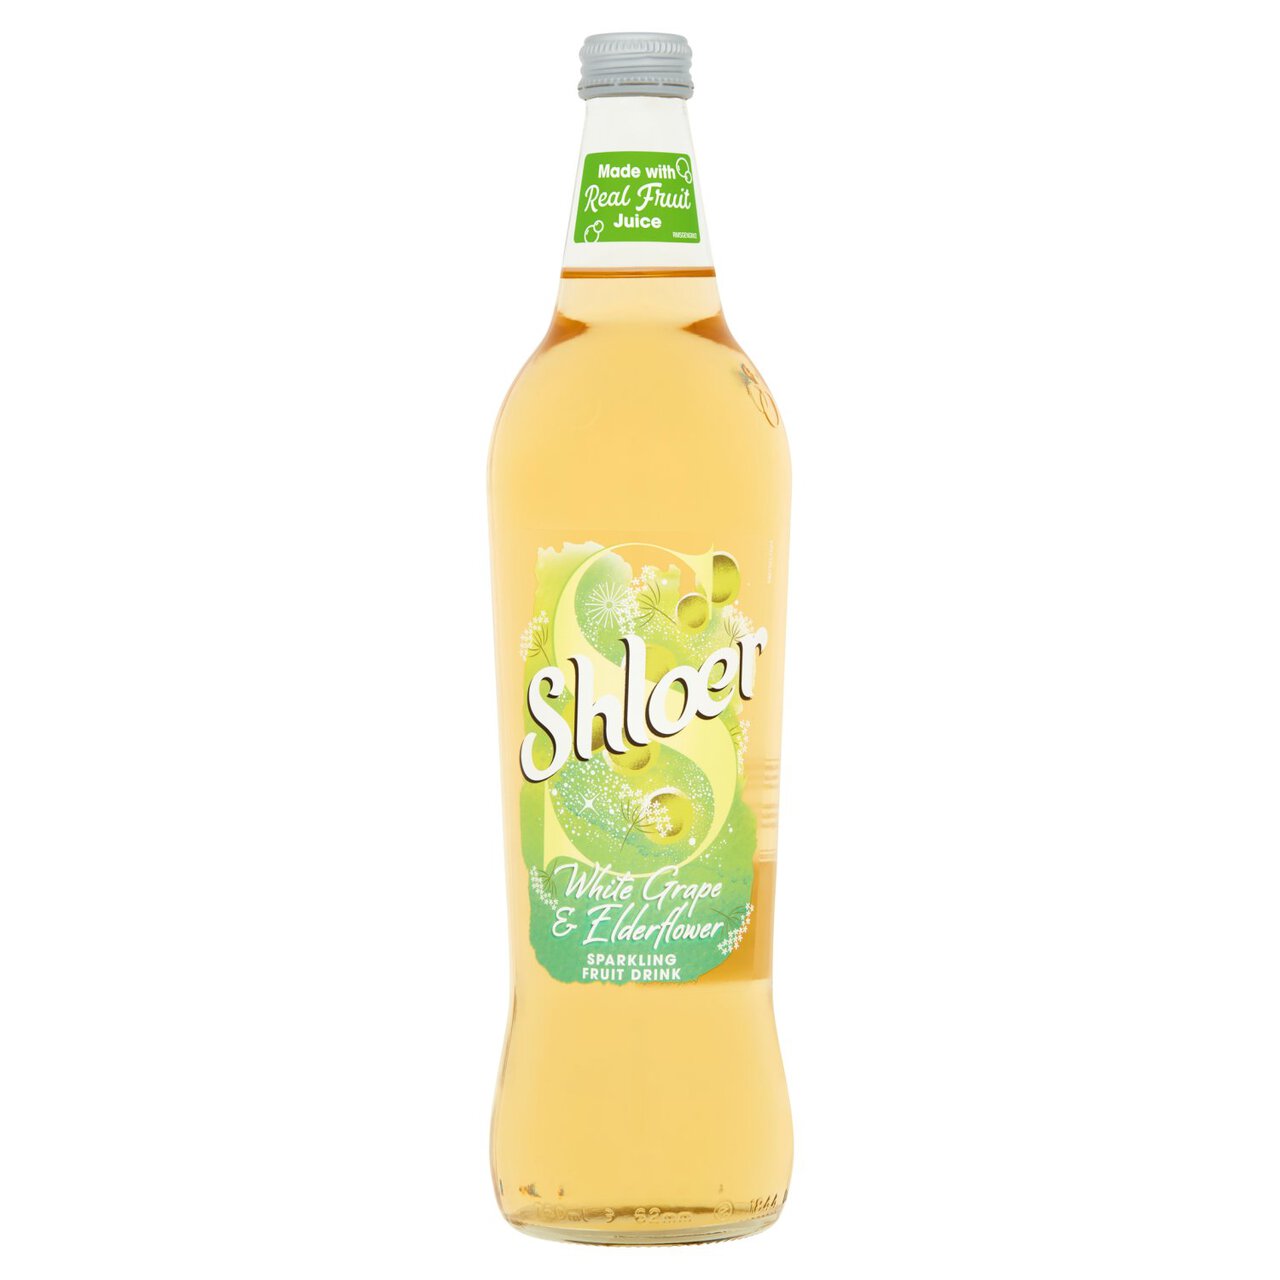 Shloer White Grape & Elderflower Sparkling Juice Drink 750ml